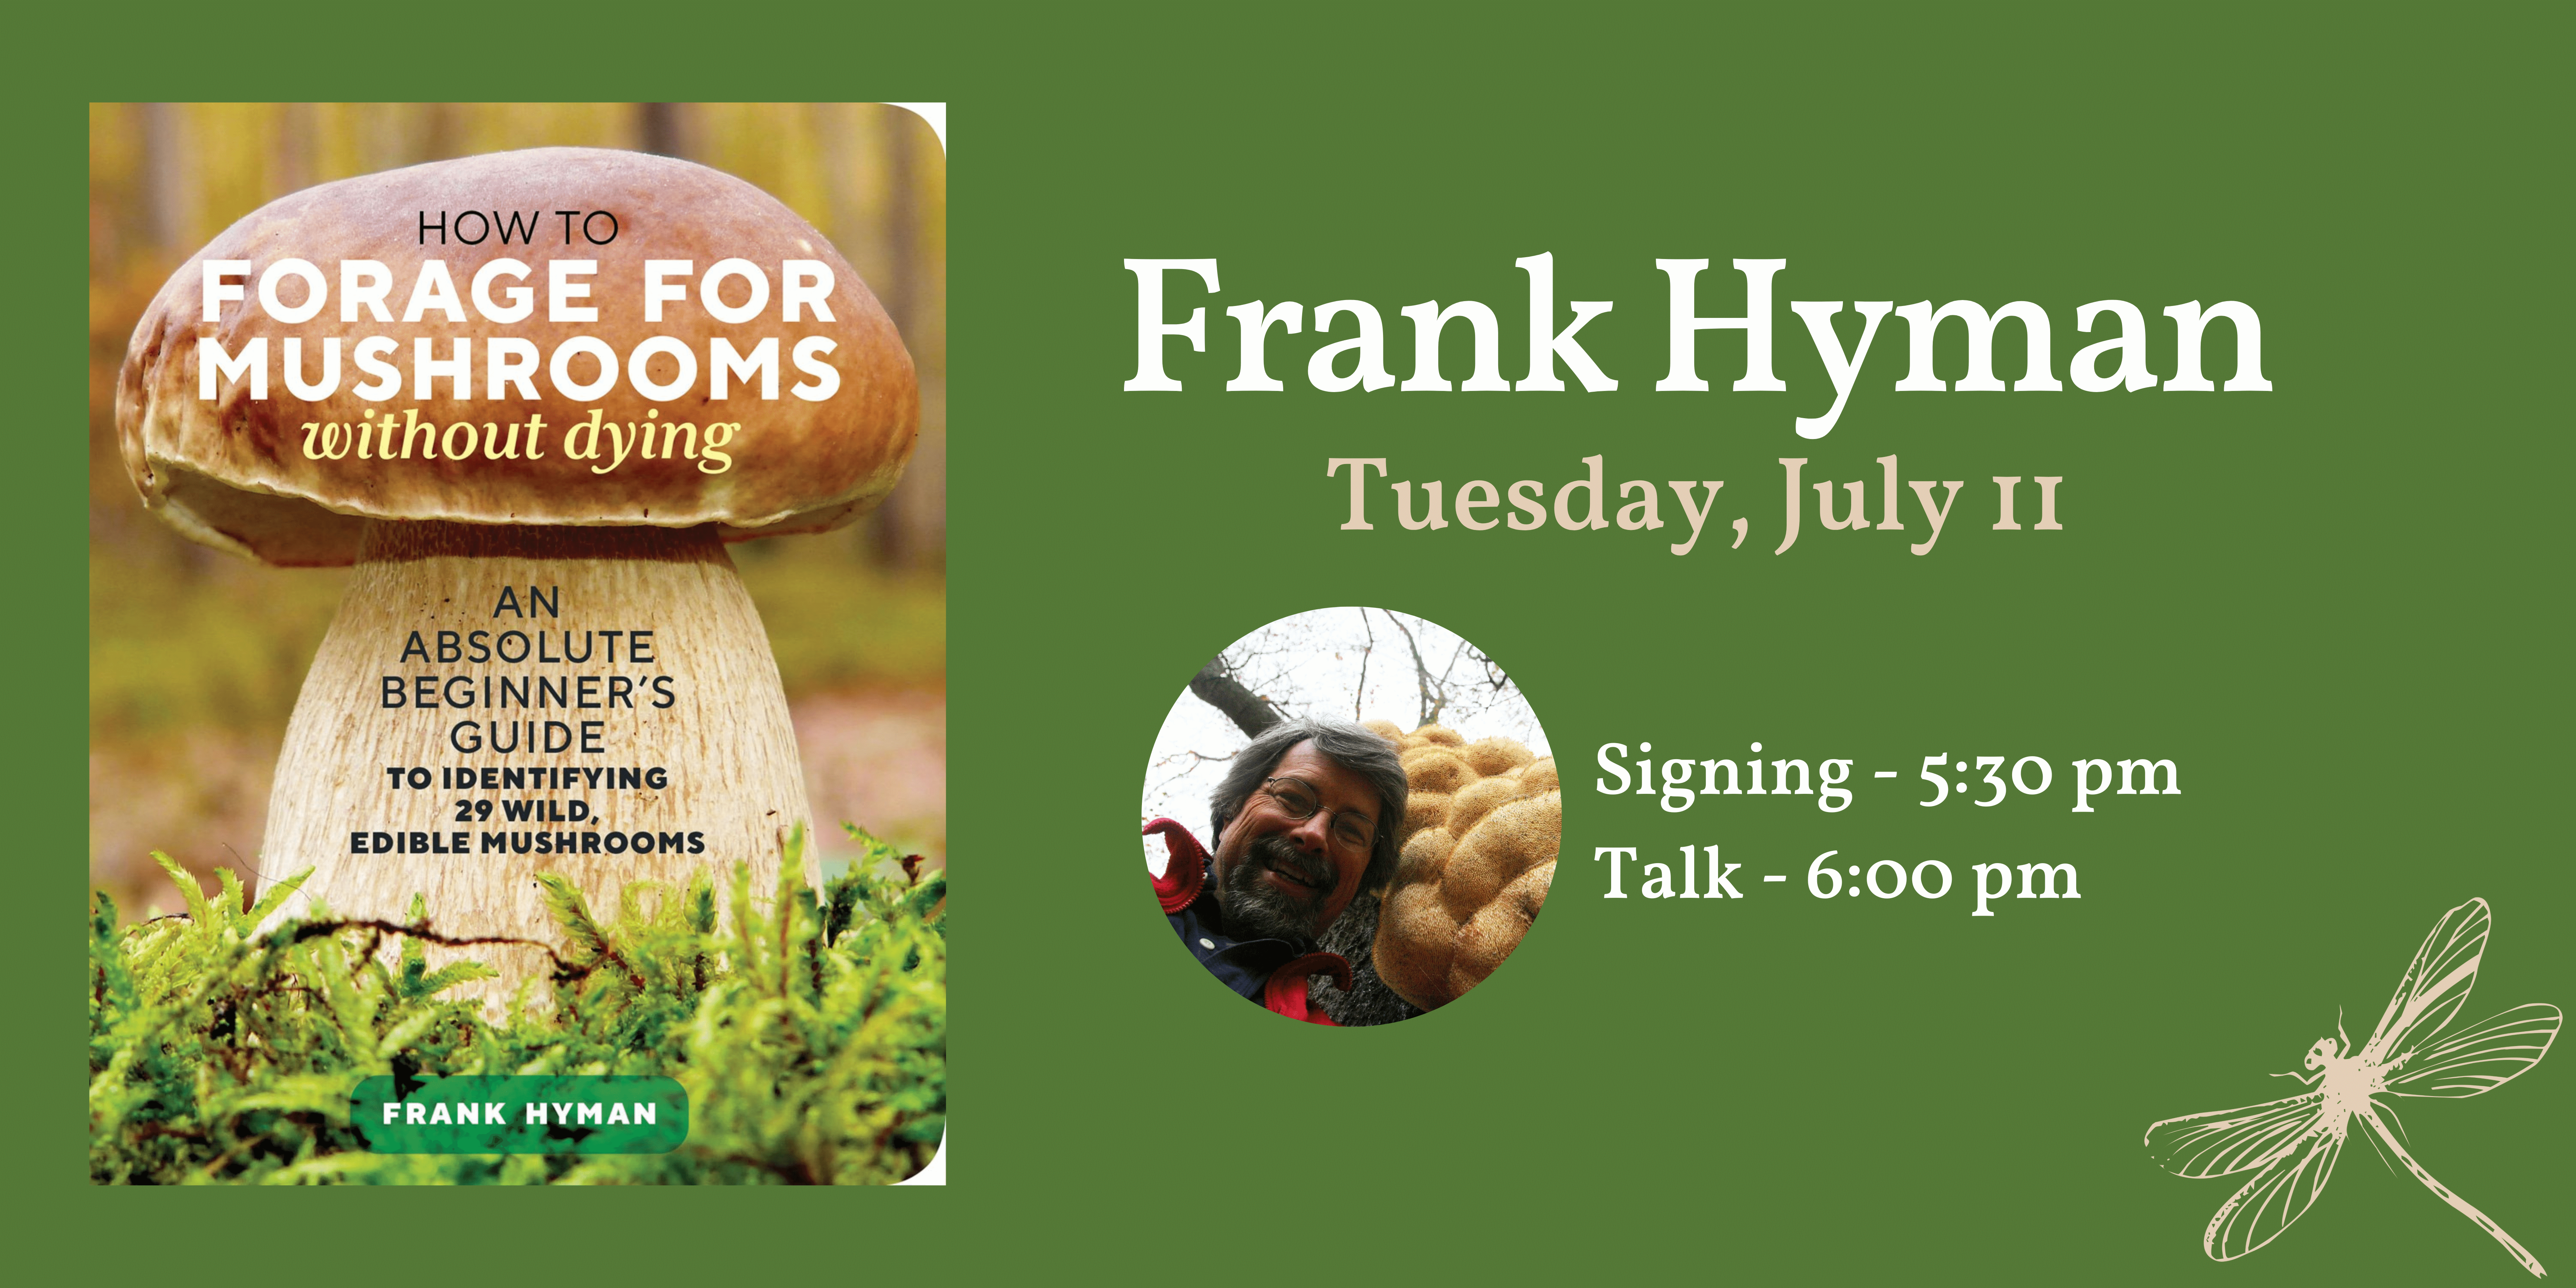 Frank Hyman at Flyleaf Books